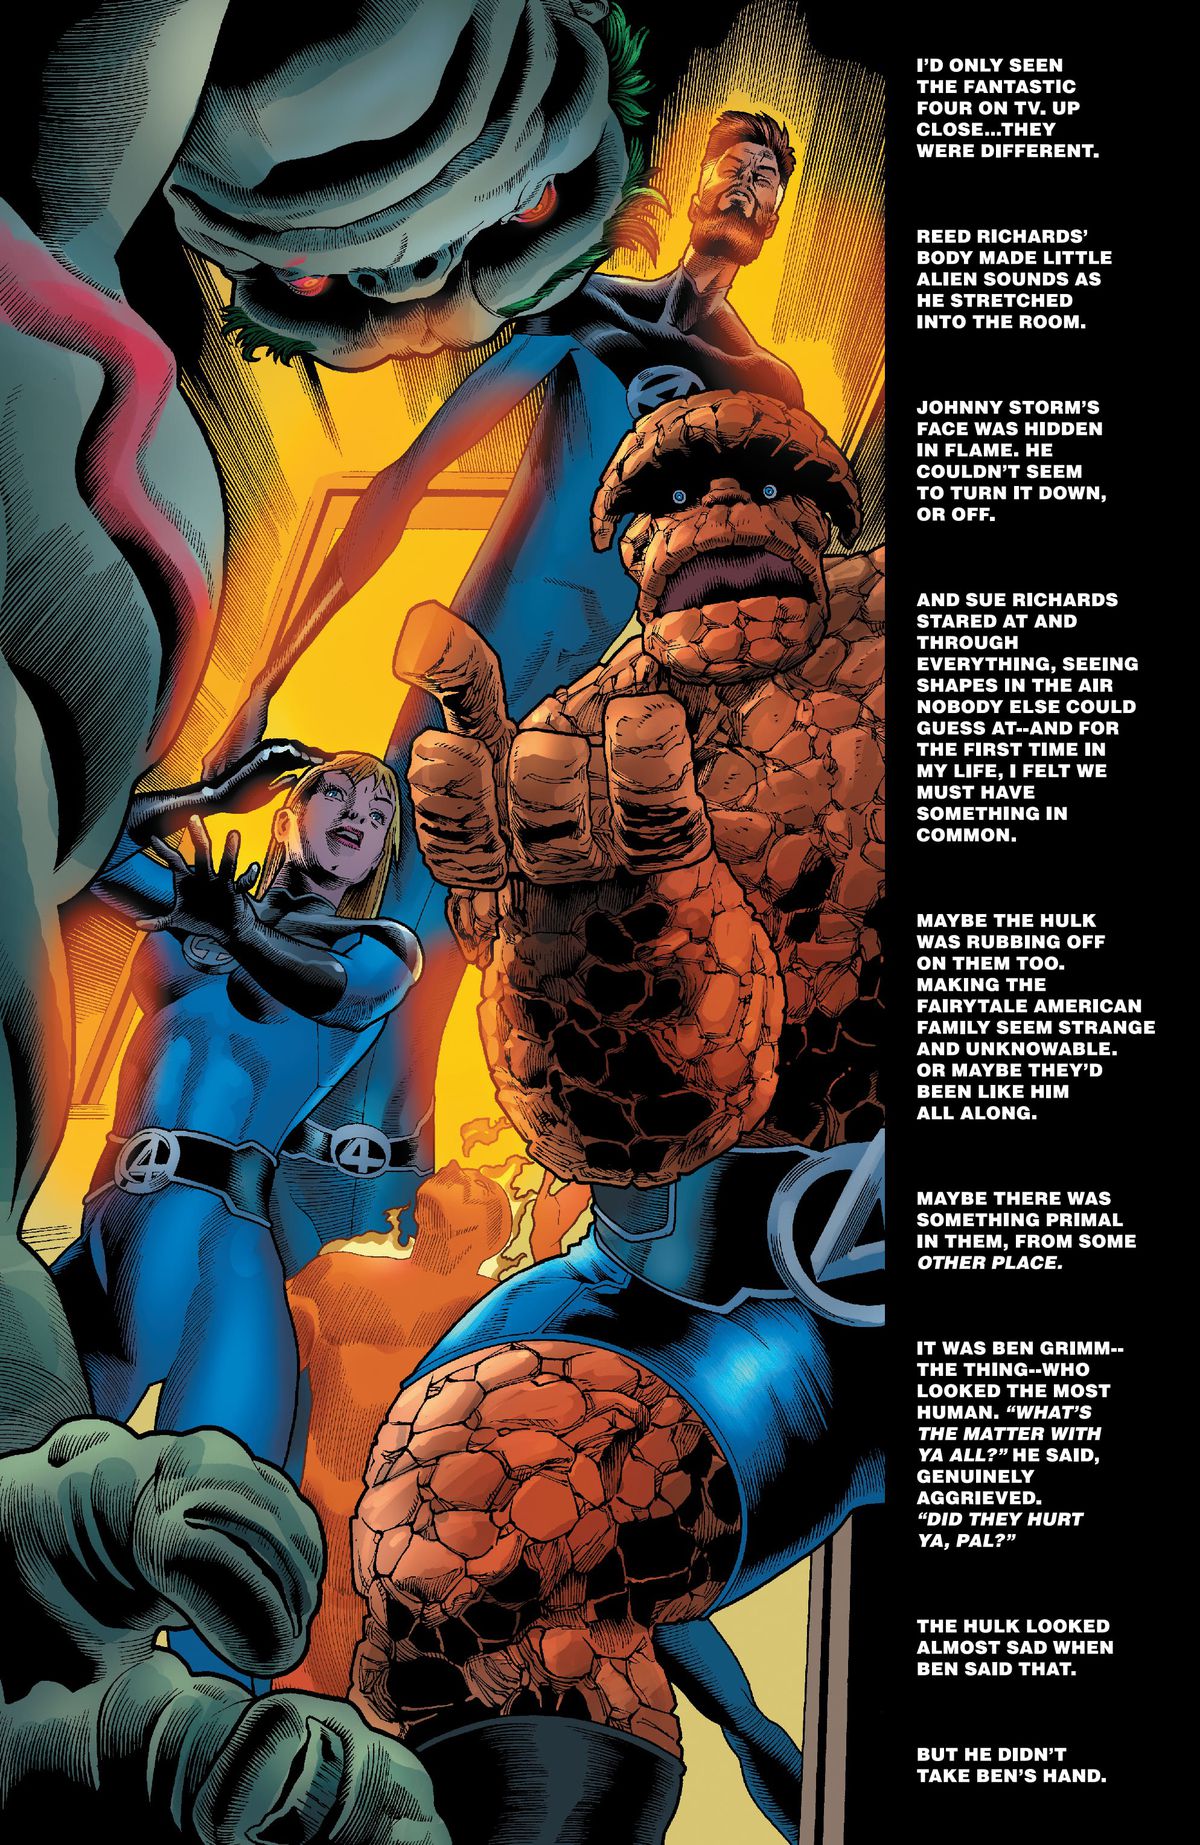 I Fantastici Quattro passano attraverso una porta luminosa e la Cosa tende una mano a Hulk colpito, dicendo 